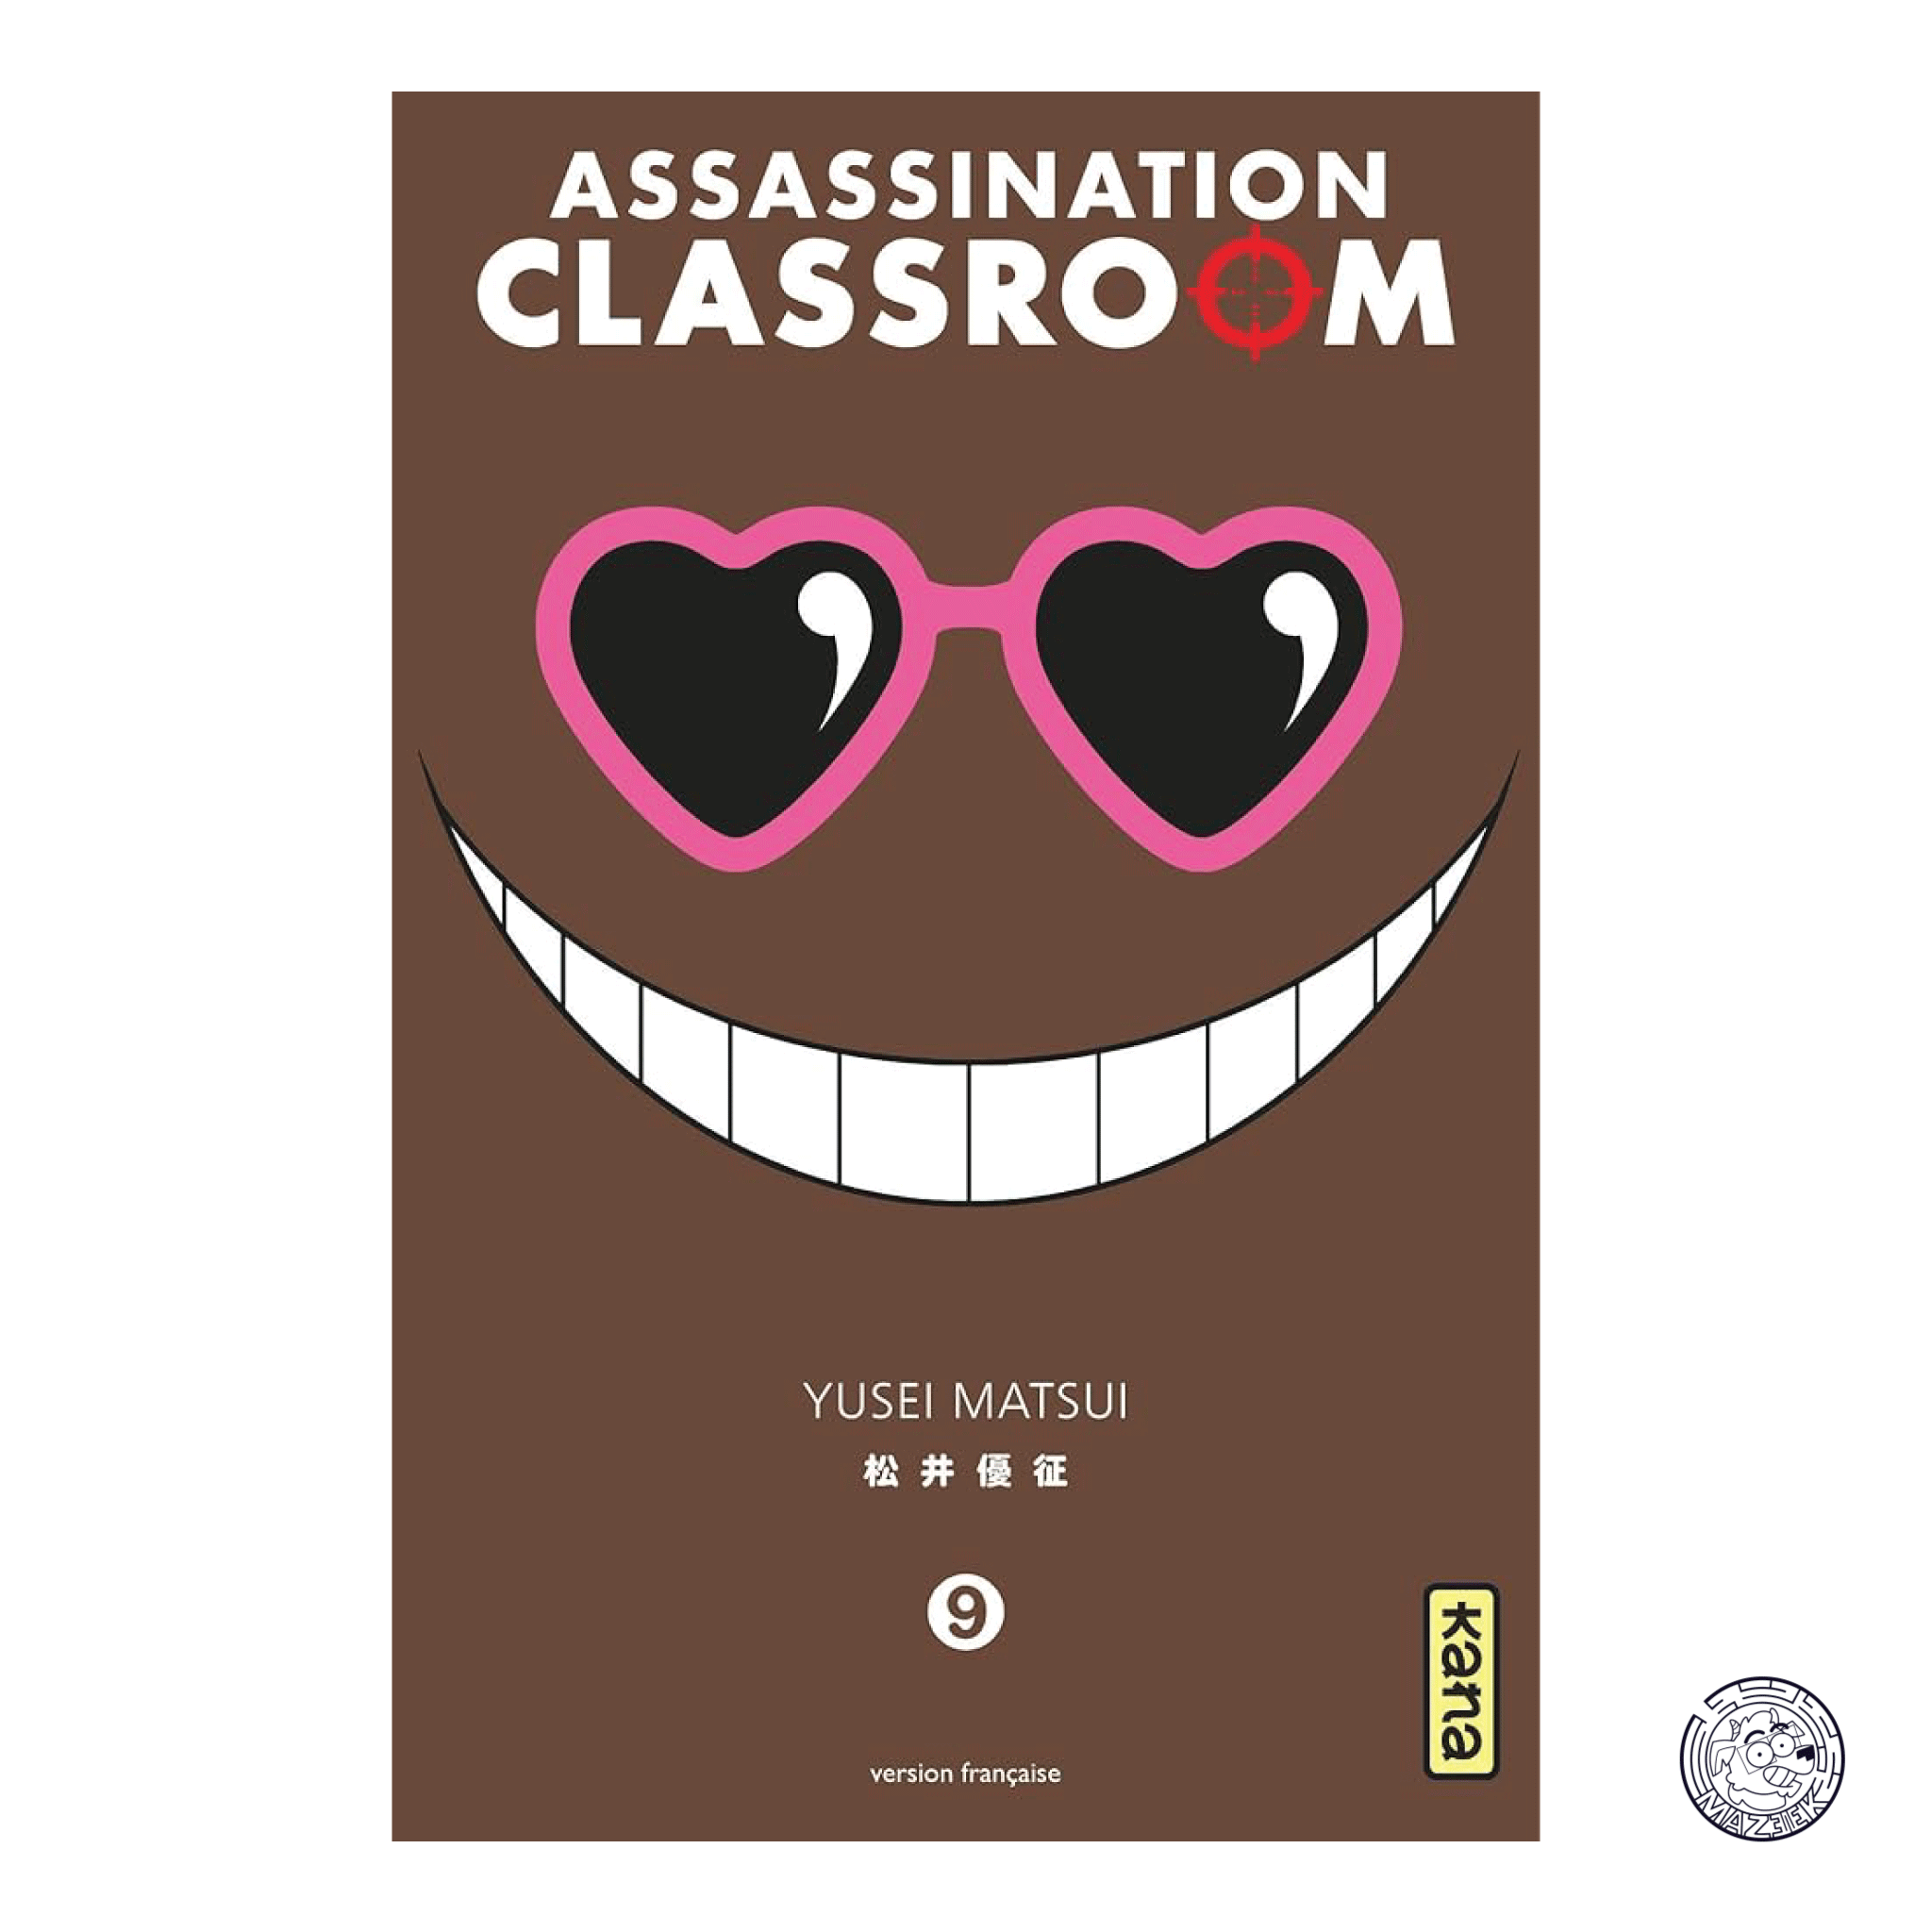 Assassination Classroom 09 - Reprint 1